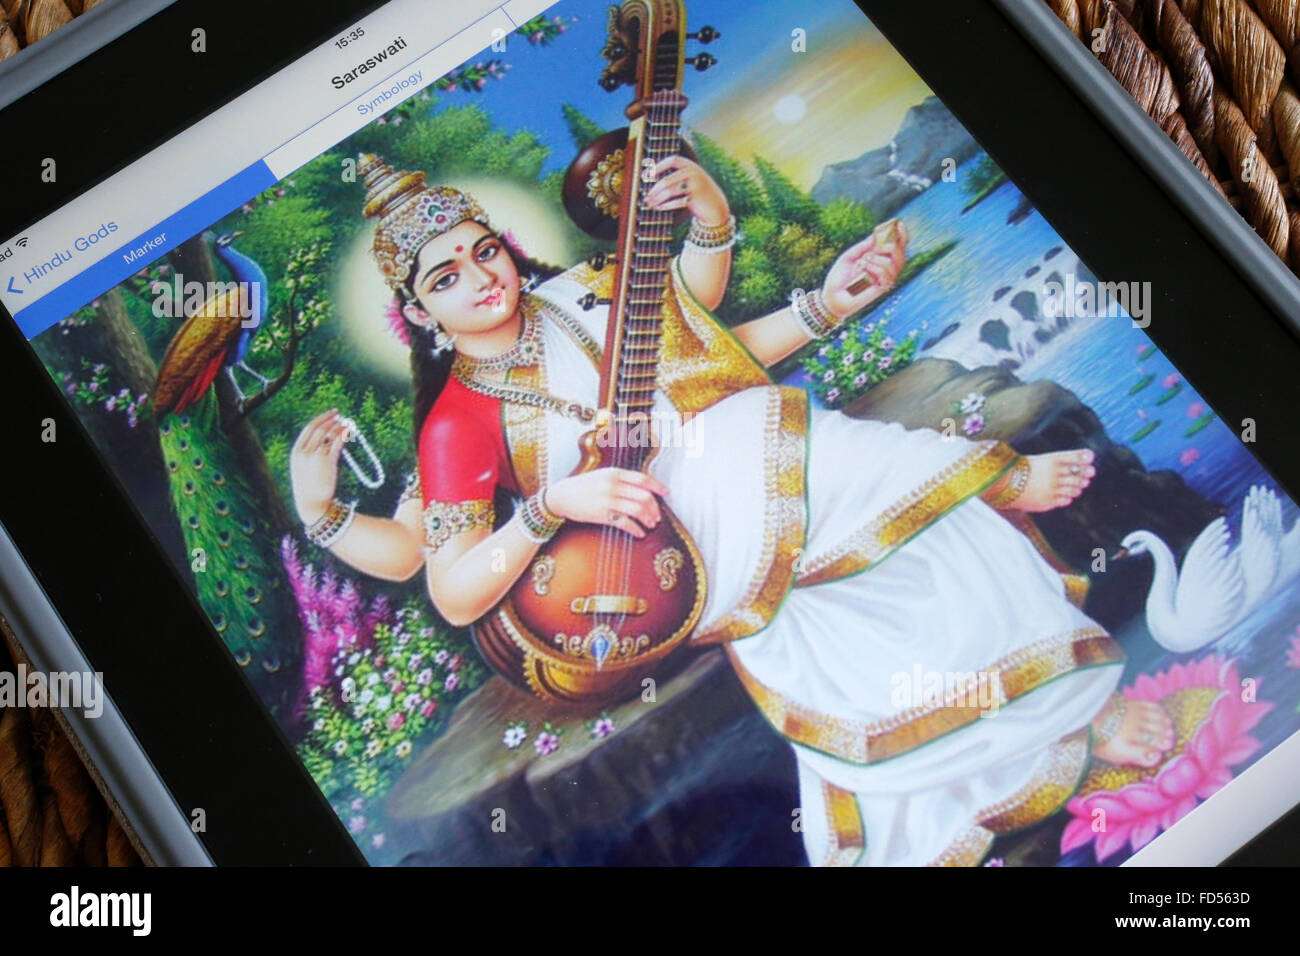 Hindu deity on an Ipad. Saraswati. Stock Photo